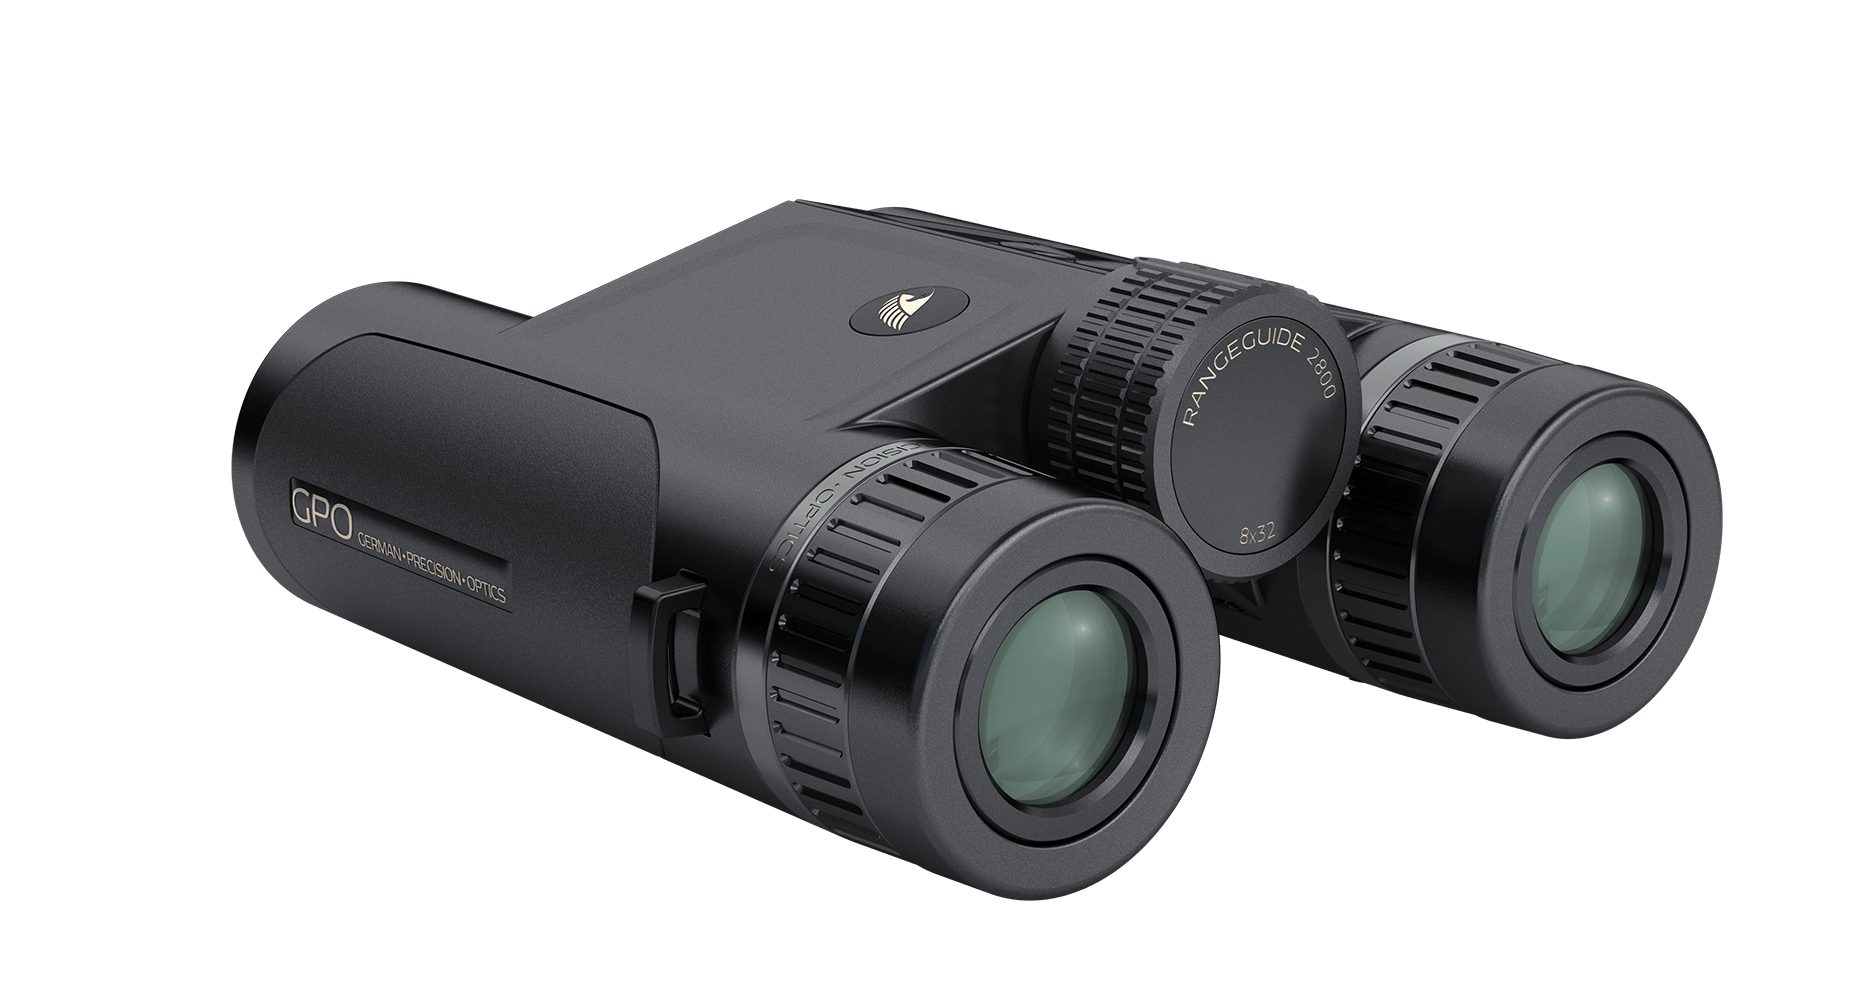 GPO Rangeguide 2800 8x32 Laser Rangefinder binoculars